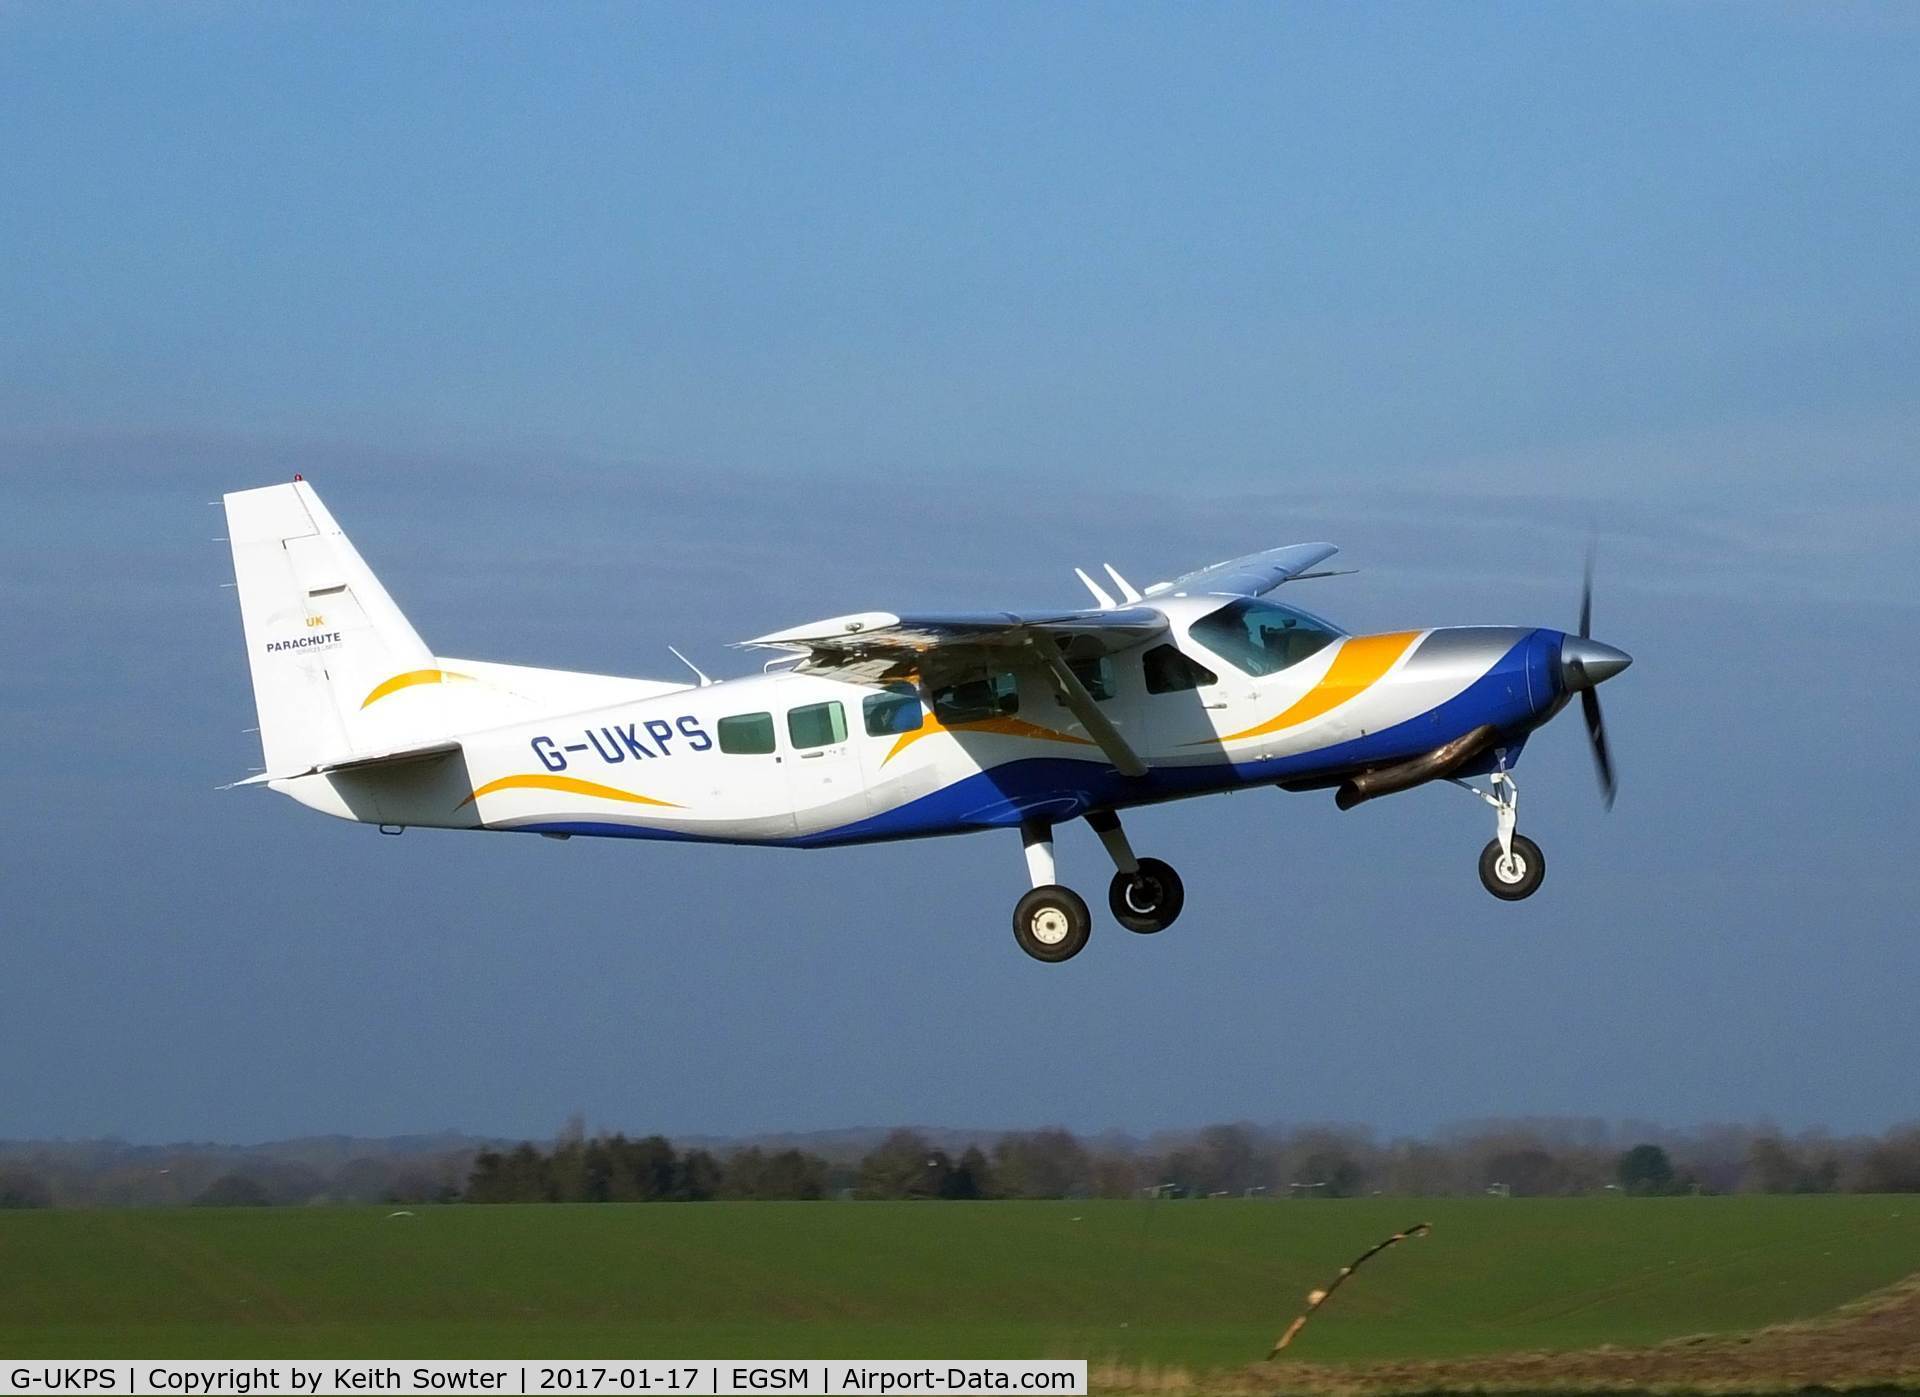 G-UKPS, 2007 Cessna 208 Caravan 1 C/N 20800423, Taking off